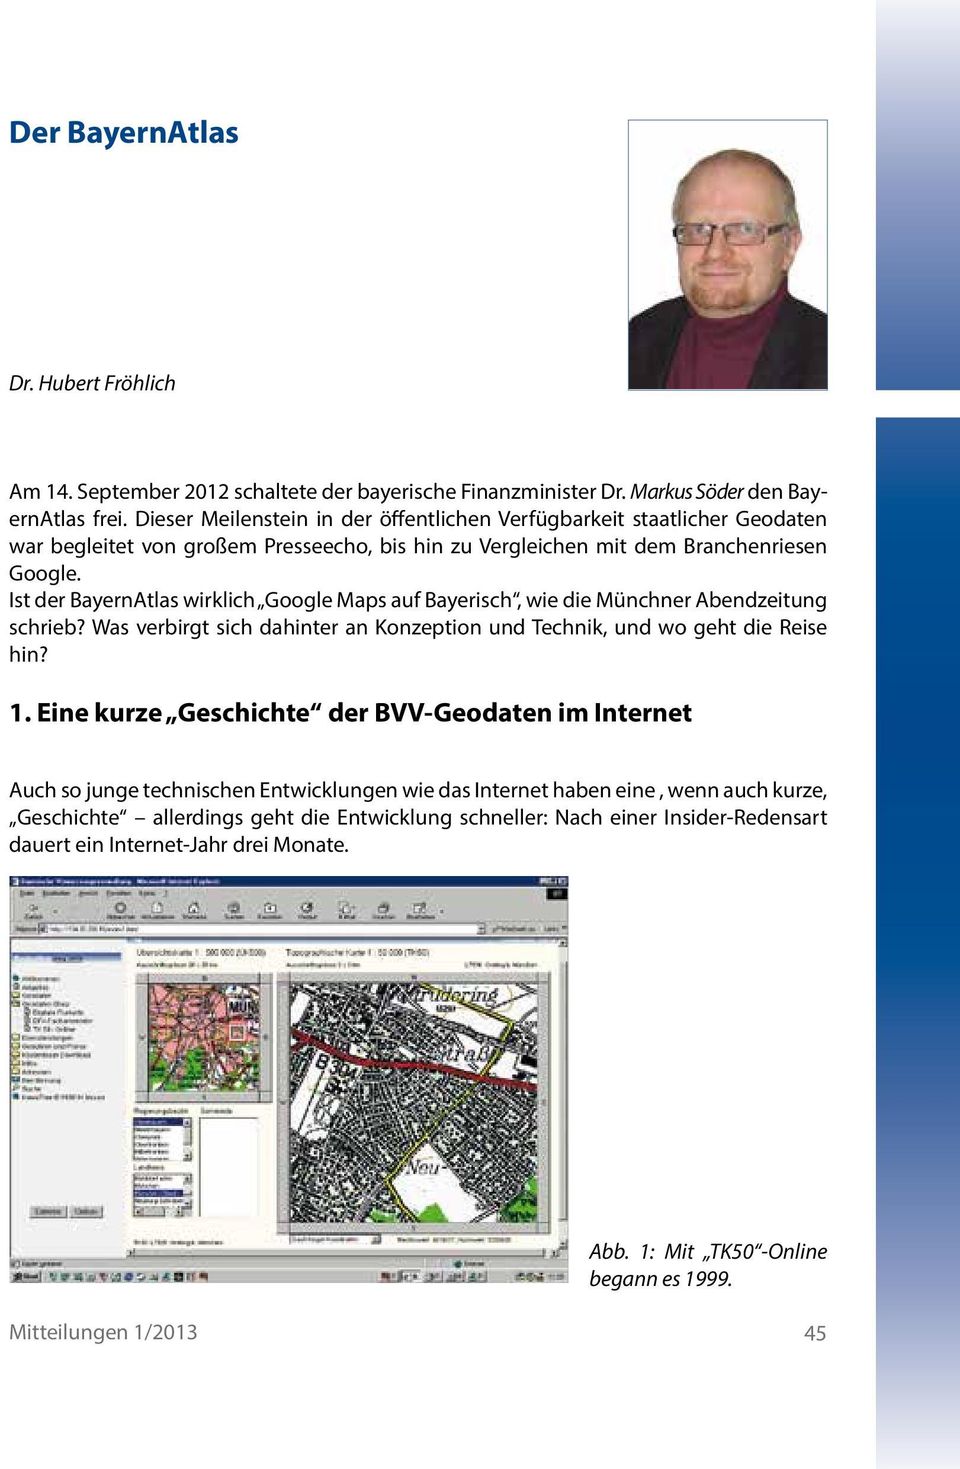 Ist der BayernAtlas wirklich Google Maps auf Bayerisch, wie die Münchner Abendzeitung schrieb? Was verbirgt sich dahinter an Konzeption und Technik, und wo geht die Reise hin? 1.